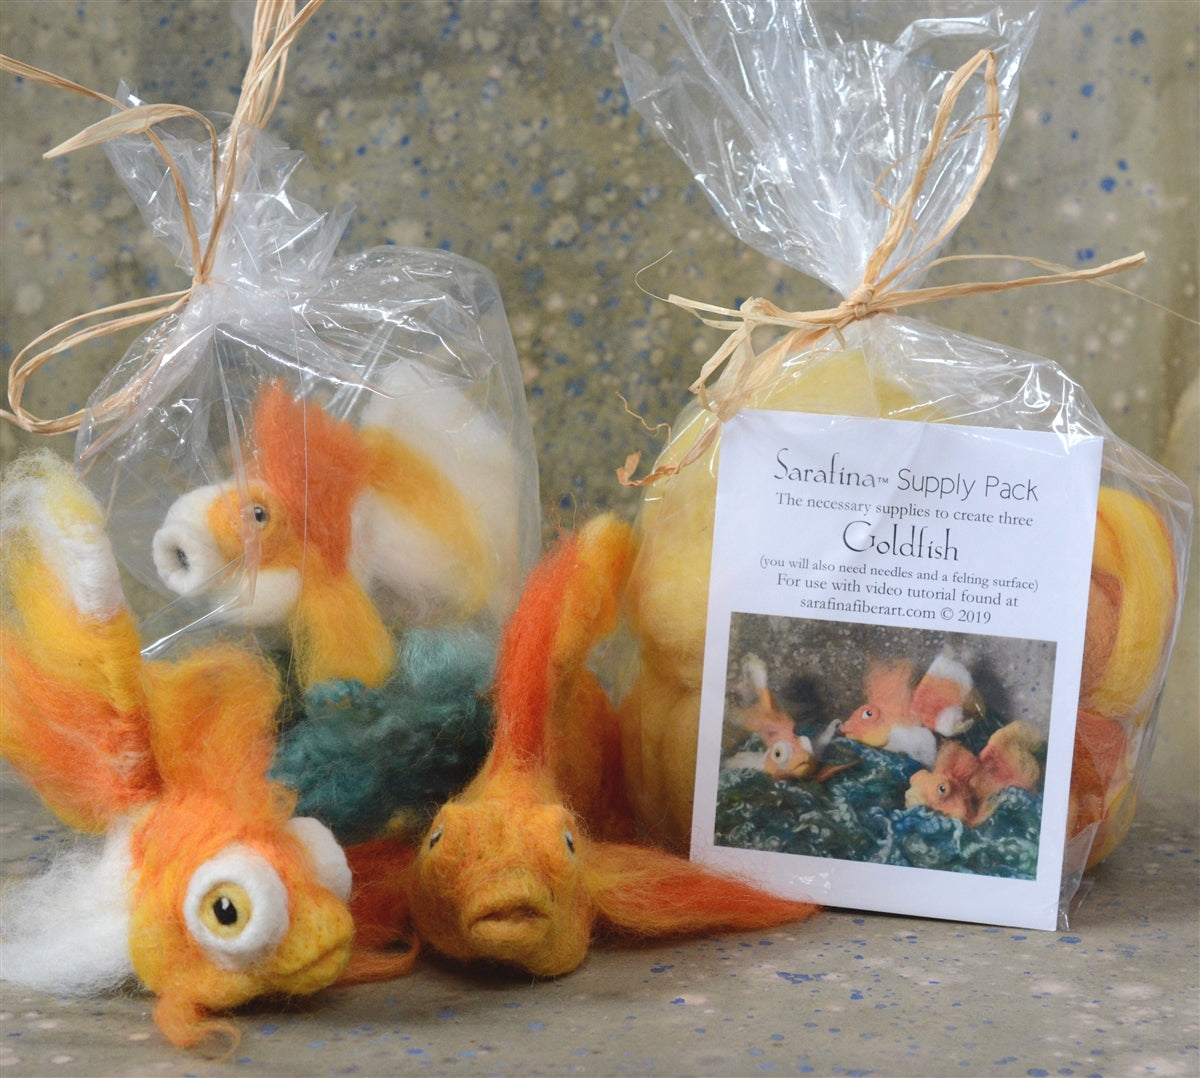 Sarafina Goldfish Supply Pack